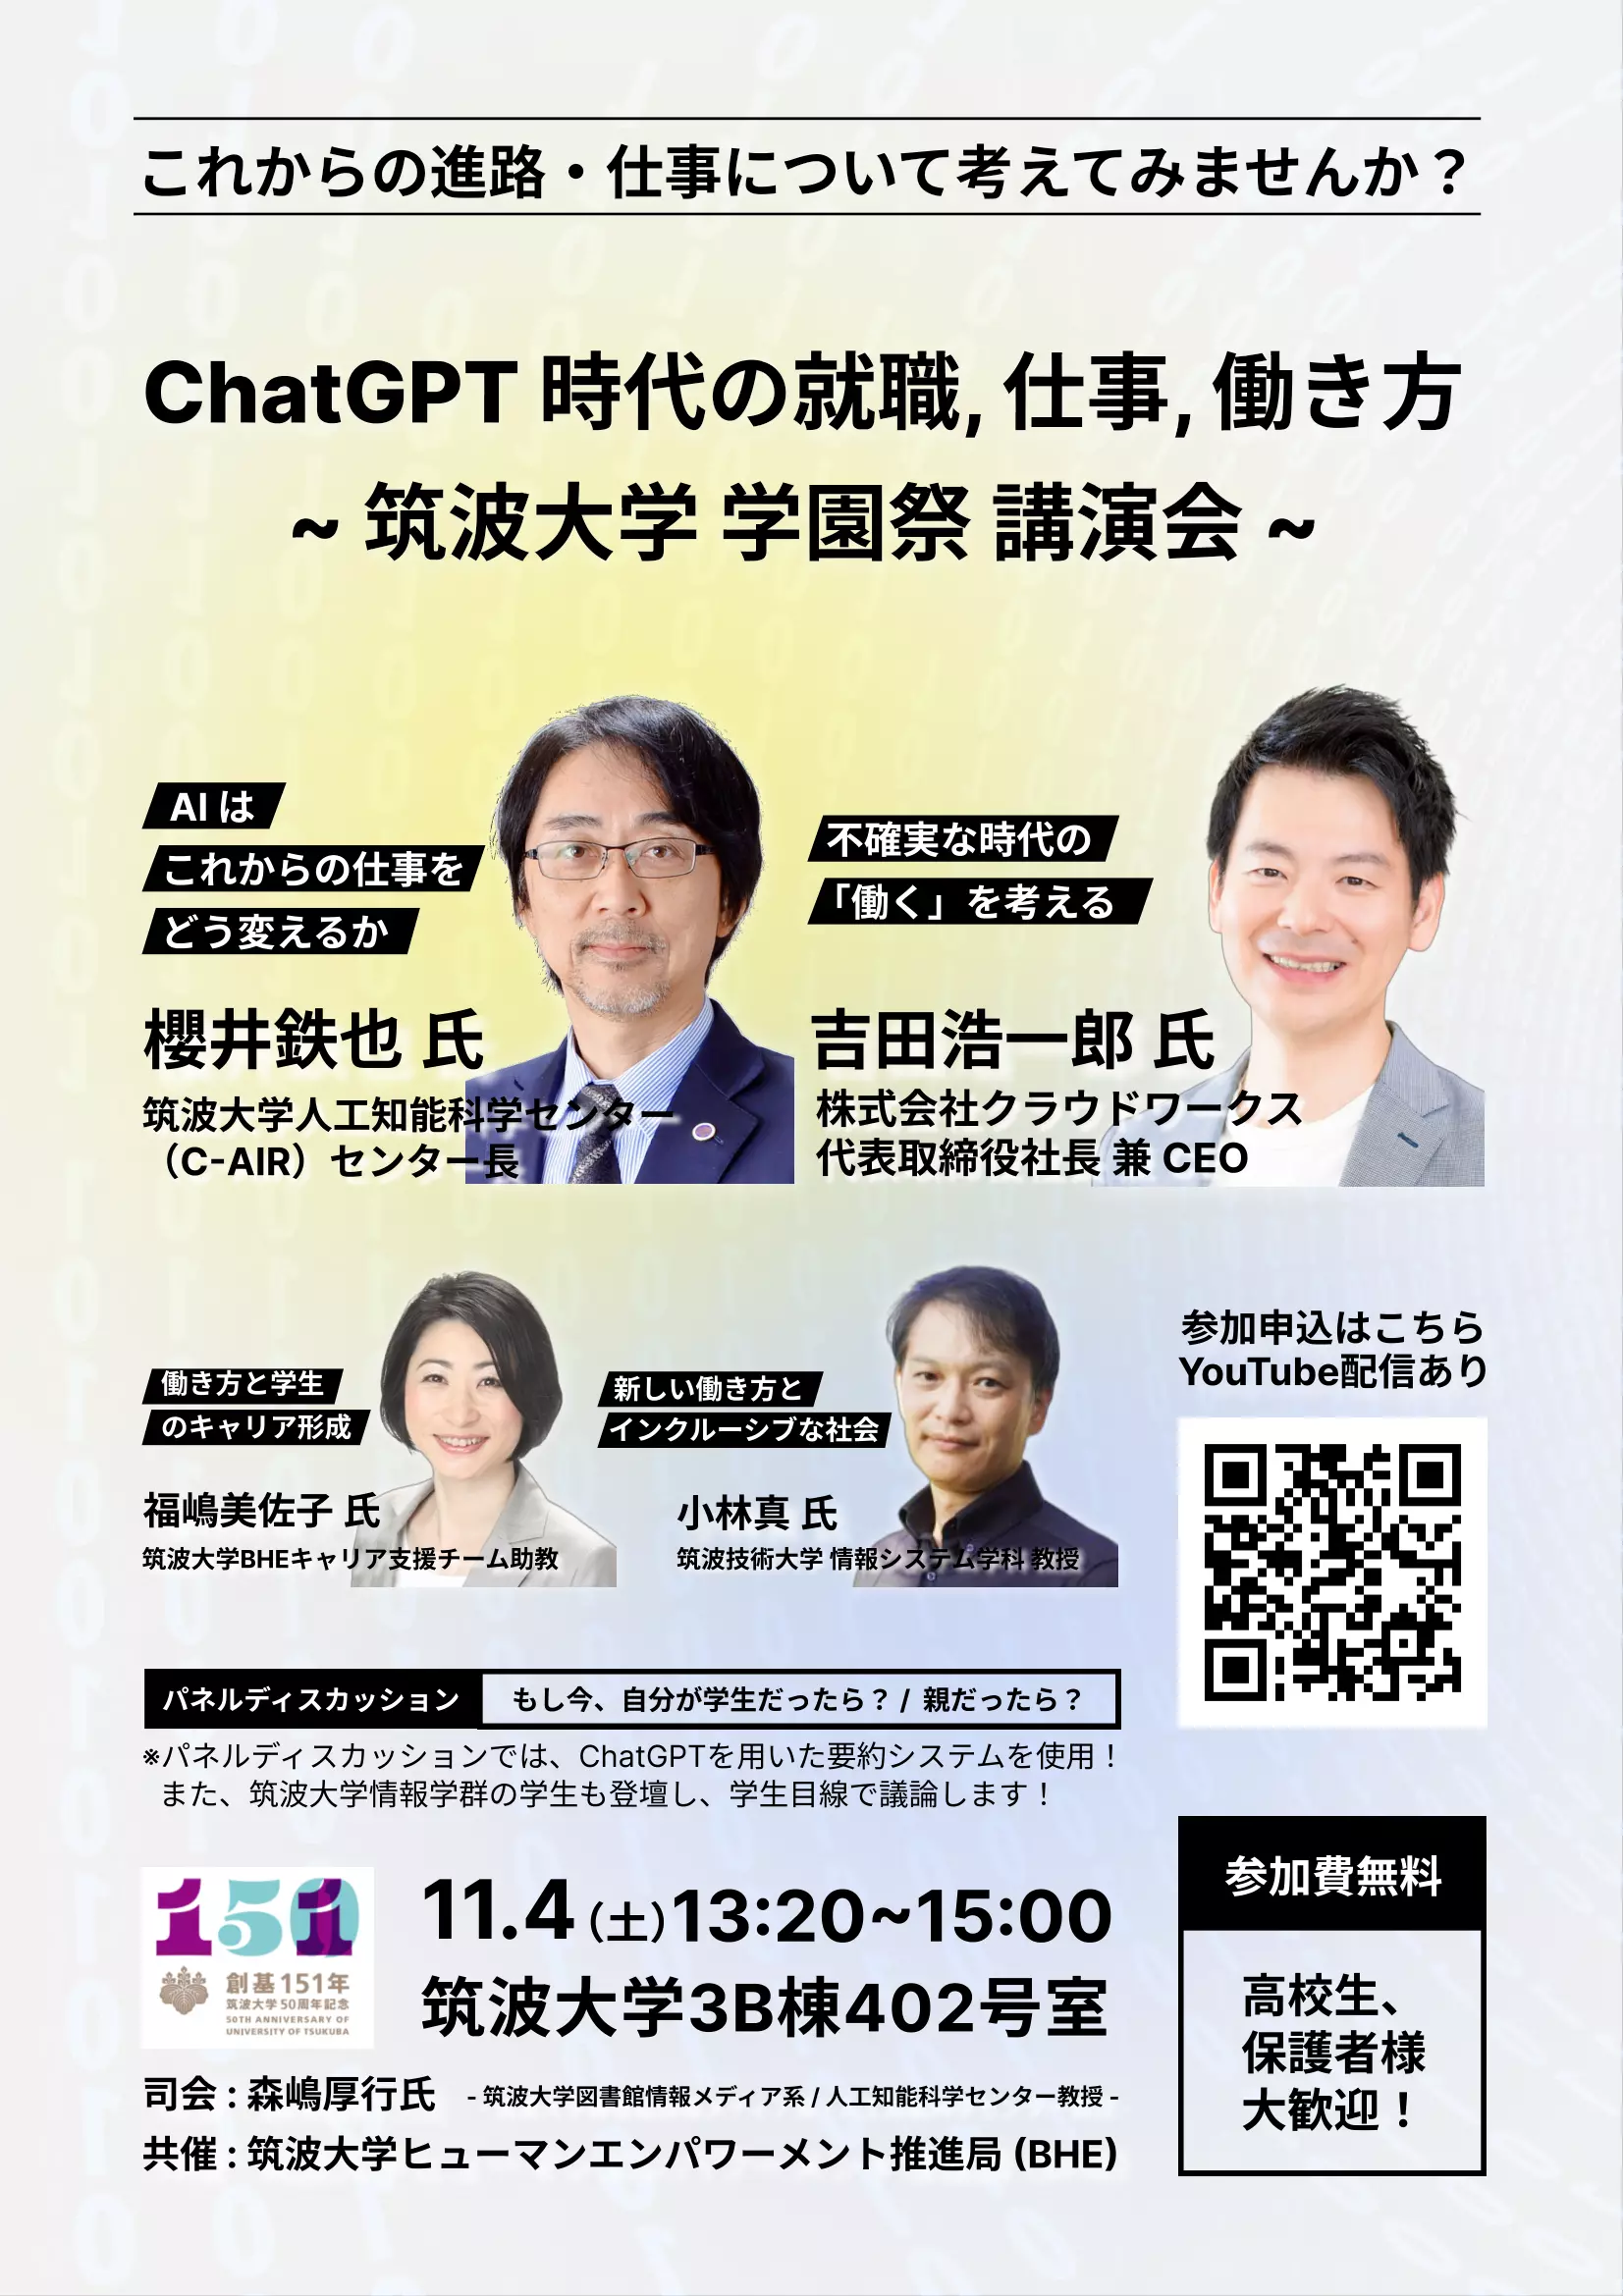 講演イベント「ChatGPT時代の就職、仕事、働き方」のポスター